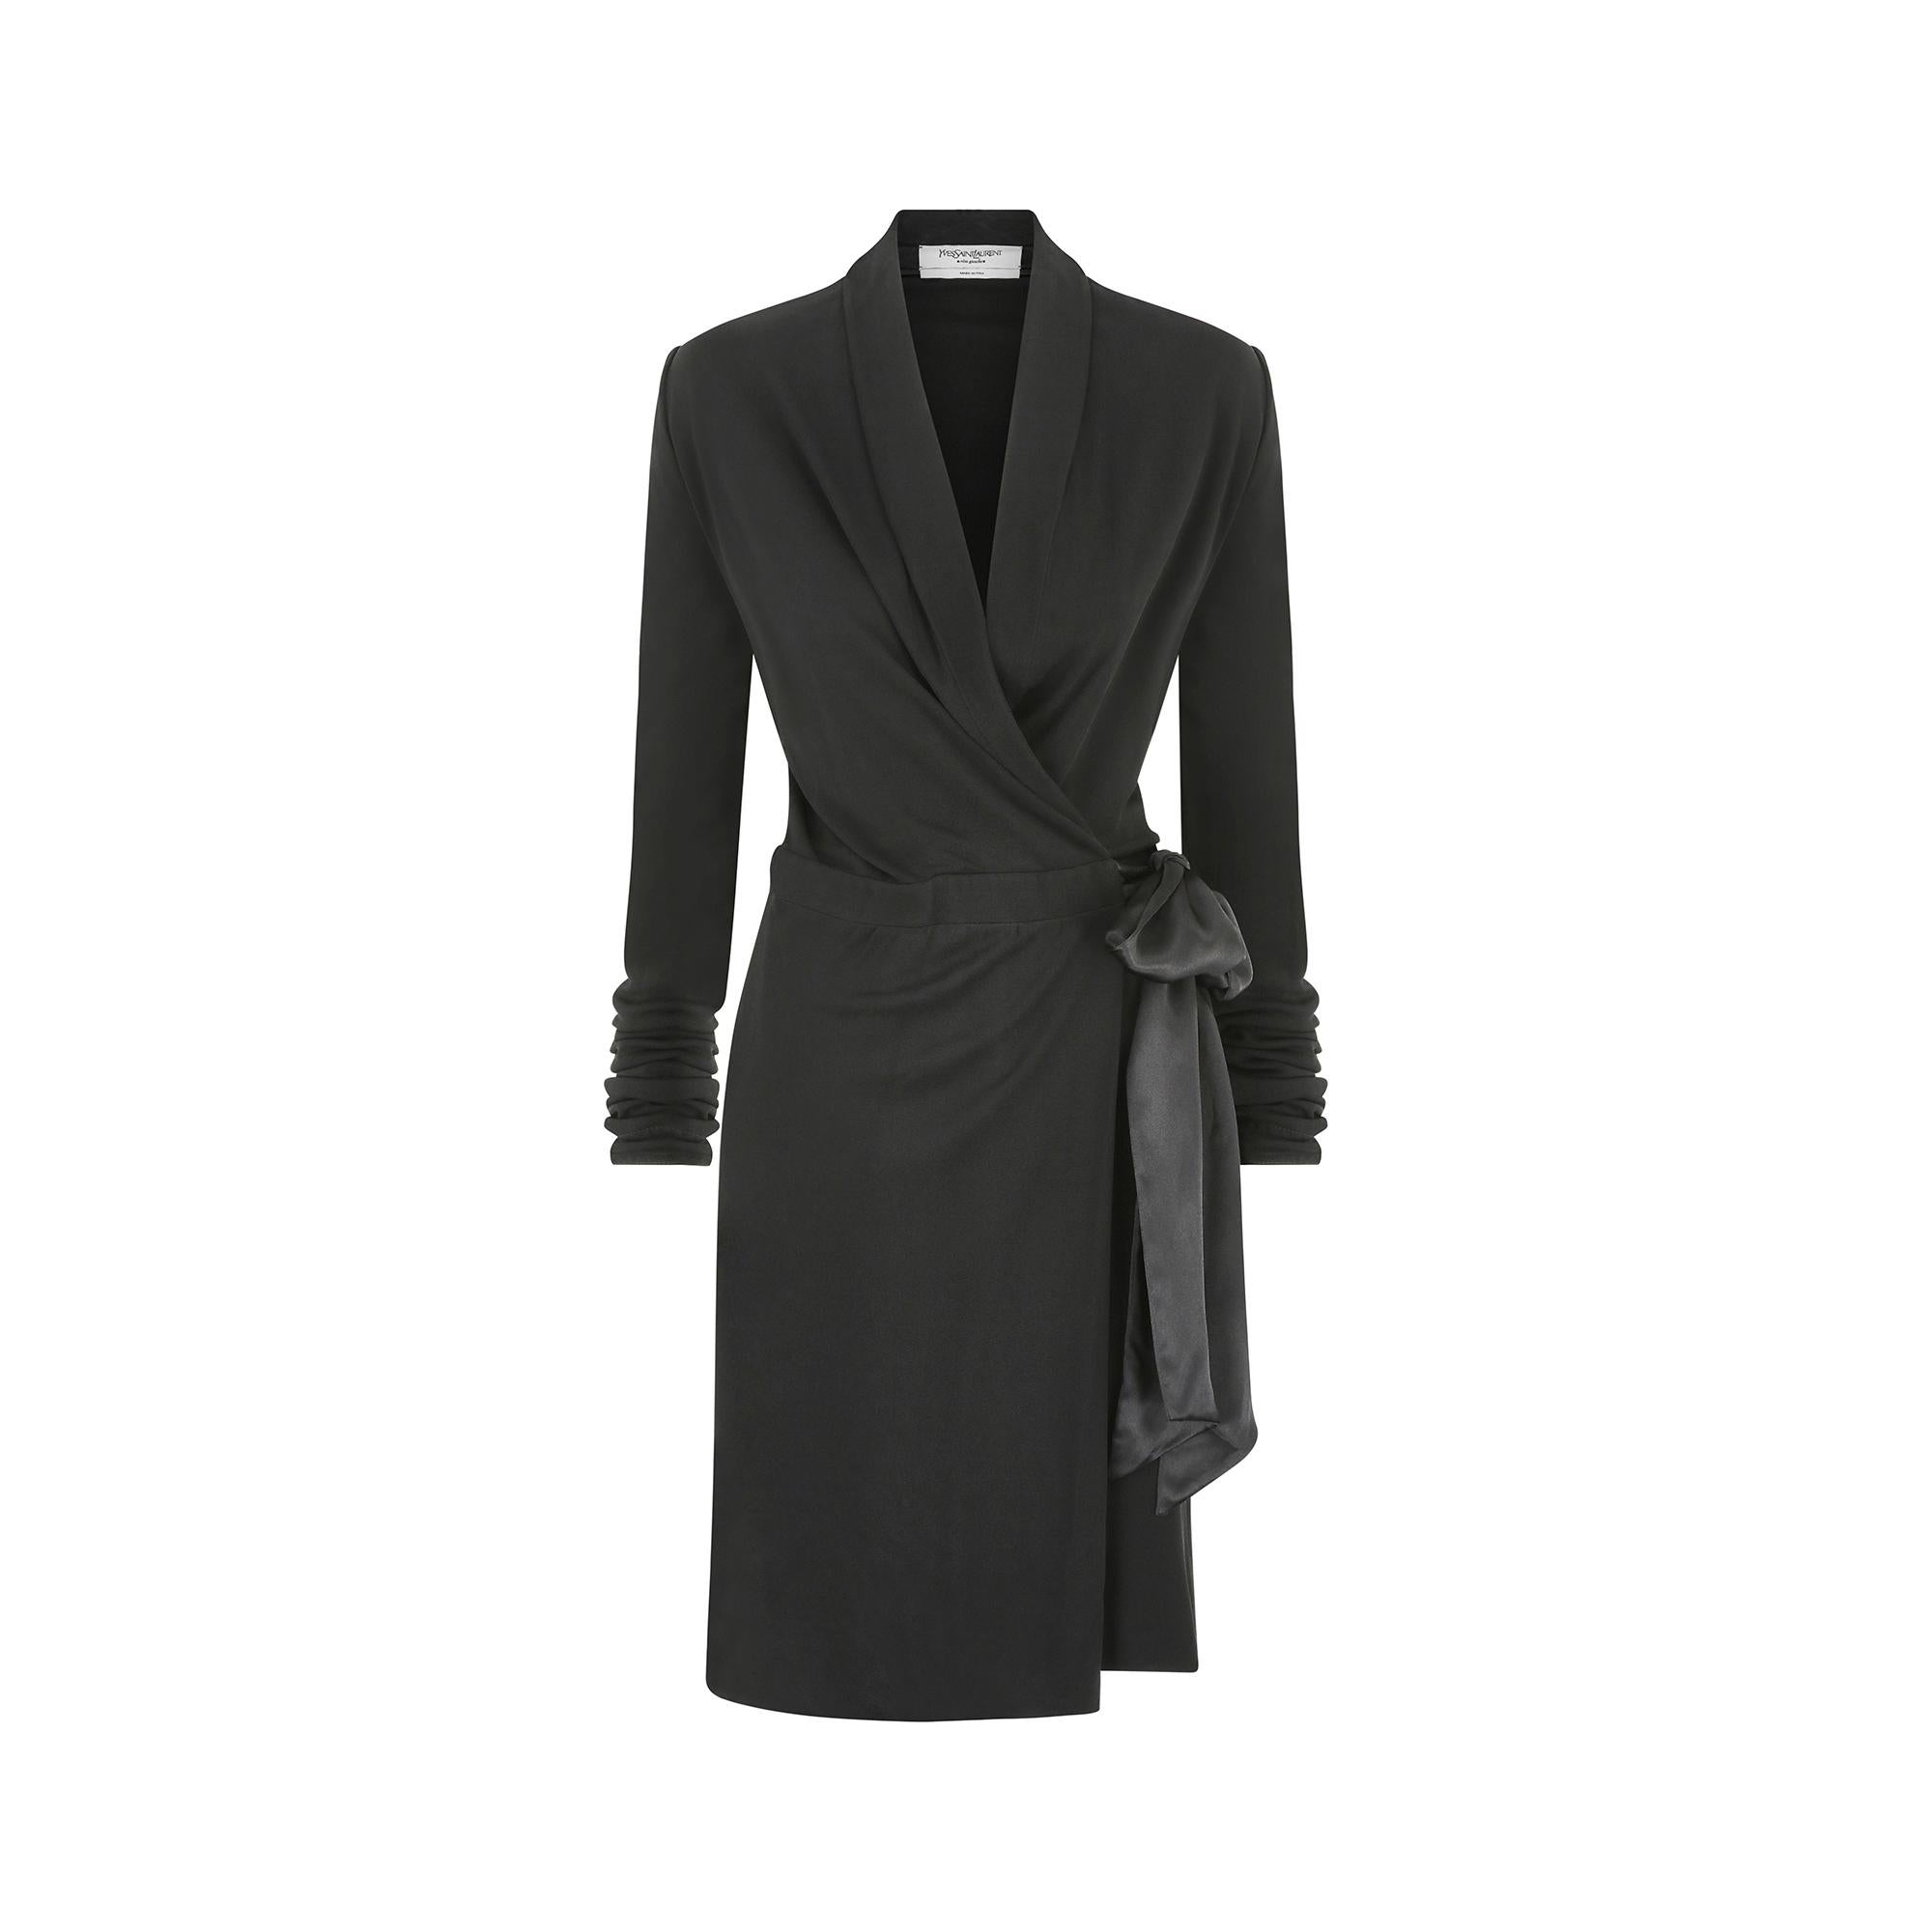 Dieses elegante Jerseykleid von Yves Saint Laurent ist ein typisches Design, das seit dem Modeschöpfer selbst von fast allen Kreativdirektoren in den Kollektionen aller Jahreszeiten interpretiert wurde. Der tiefschwarze Viskosestoff hat eine